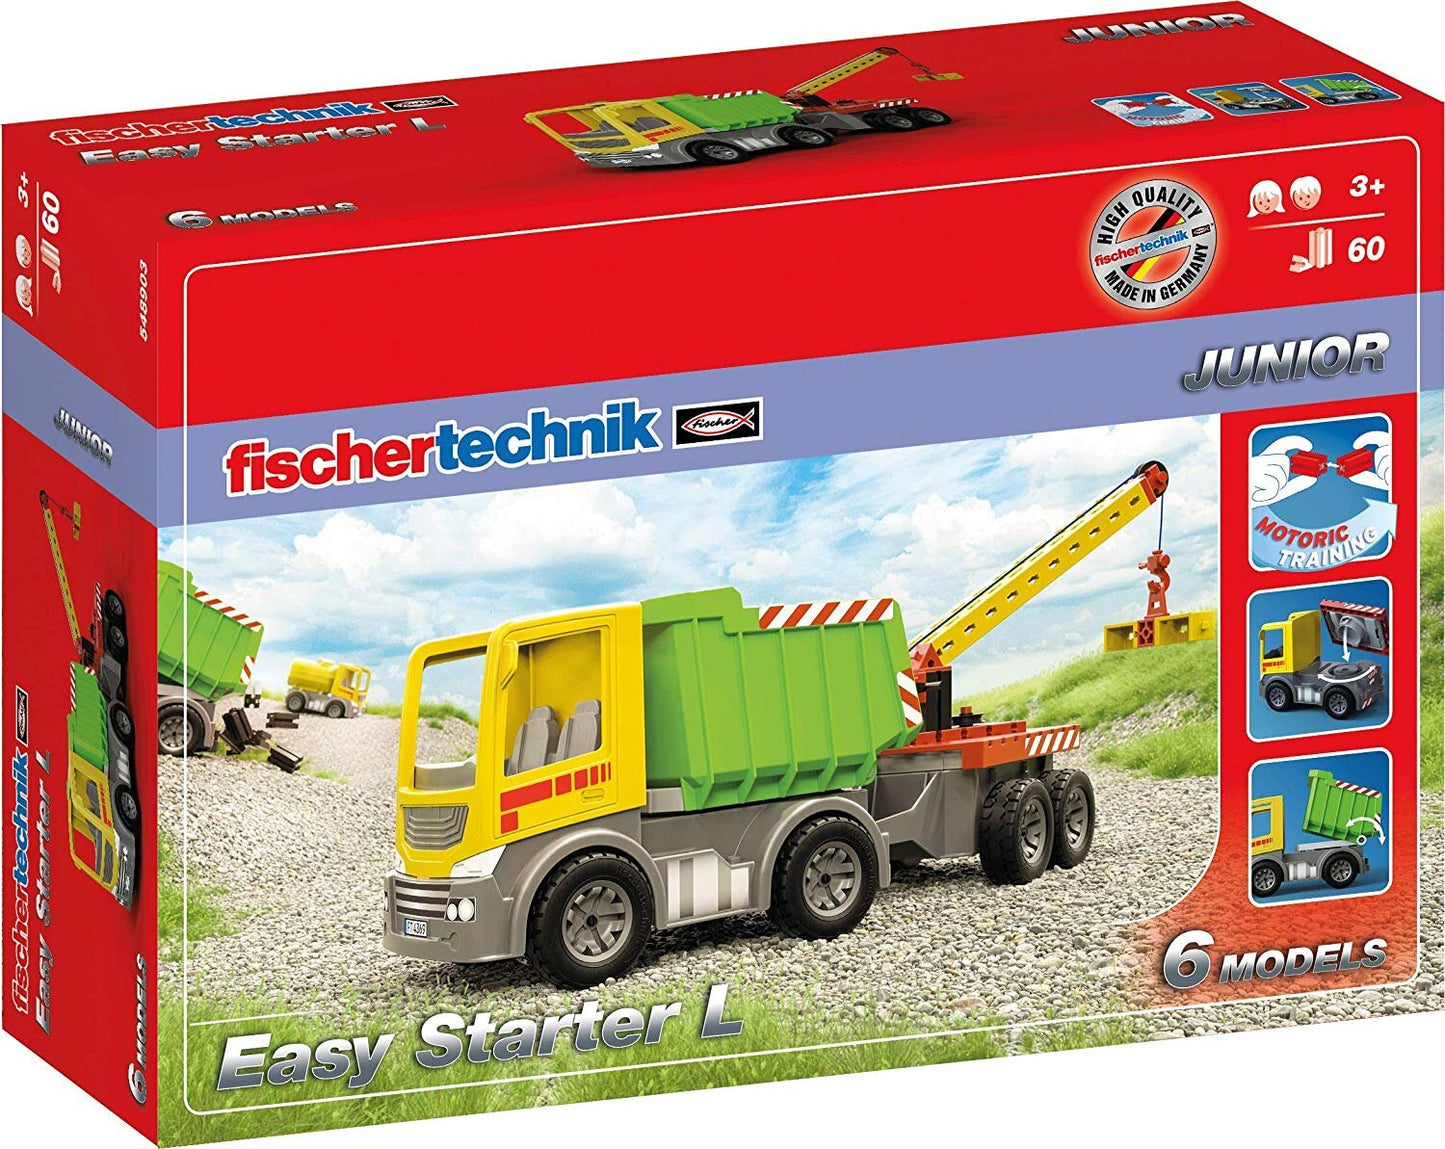 fischertechnik JUNIOR Easy Starter L Construction Kit